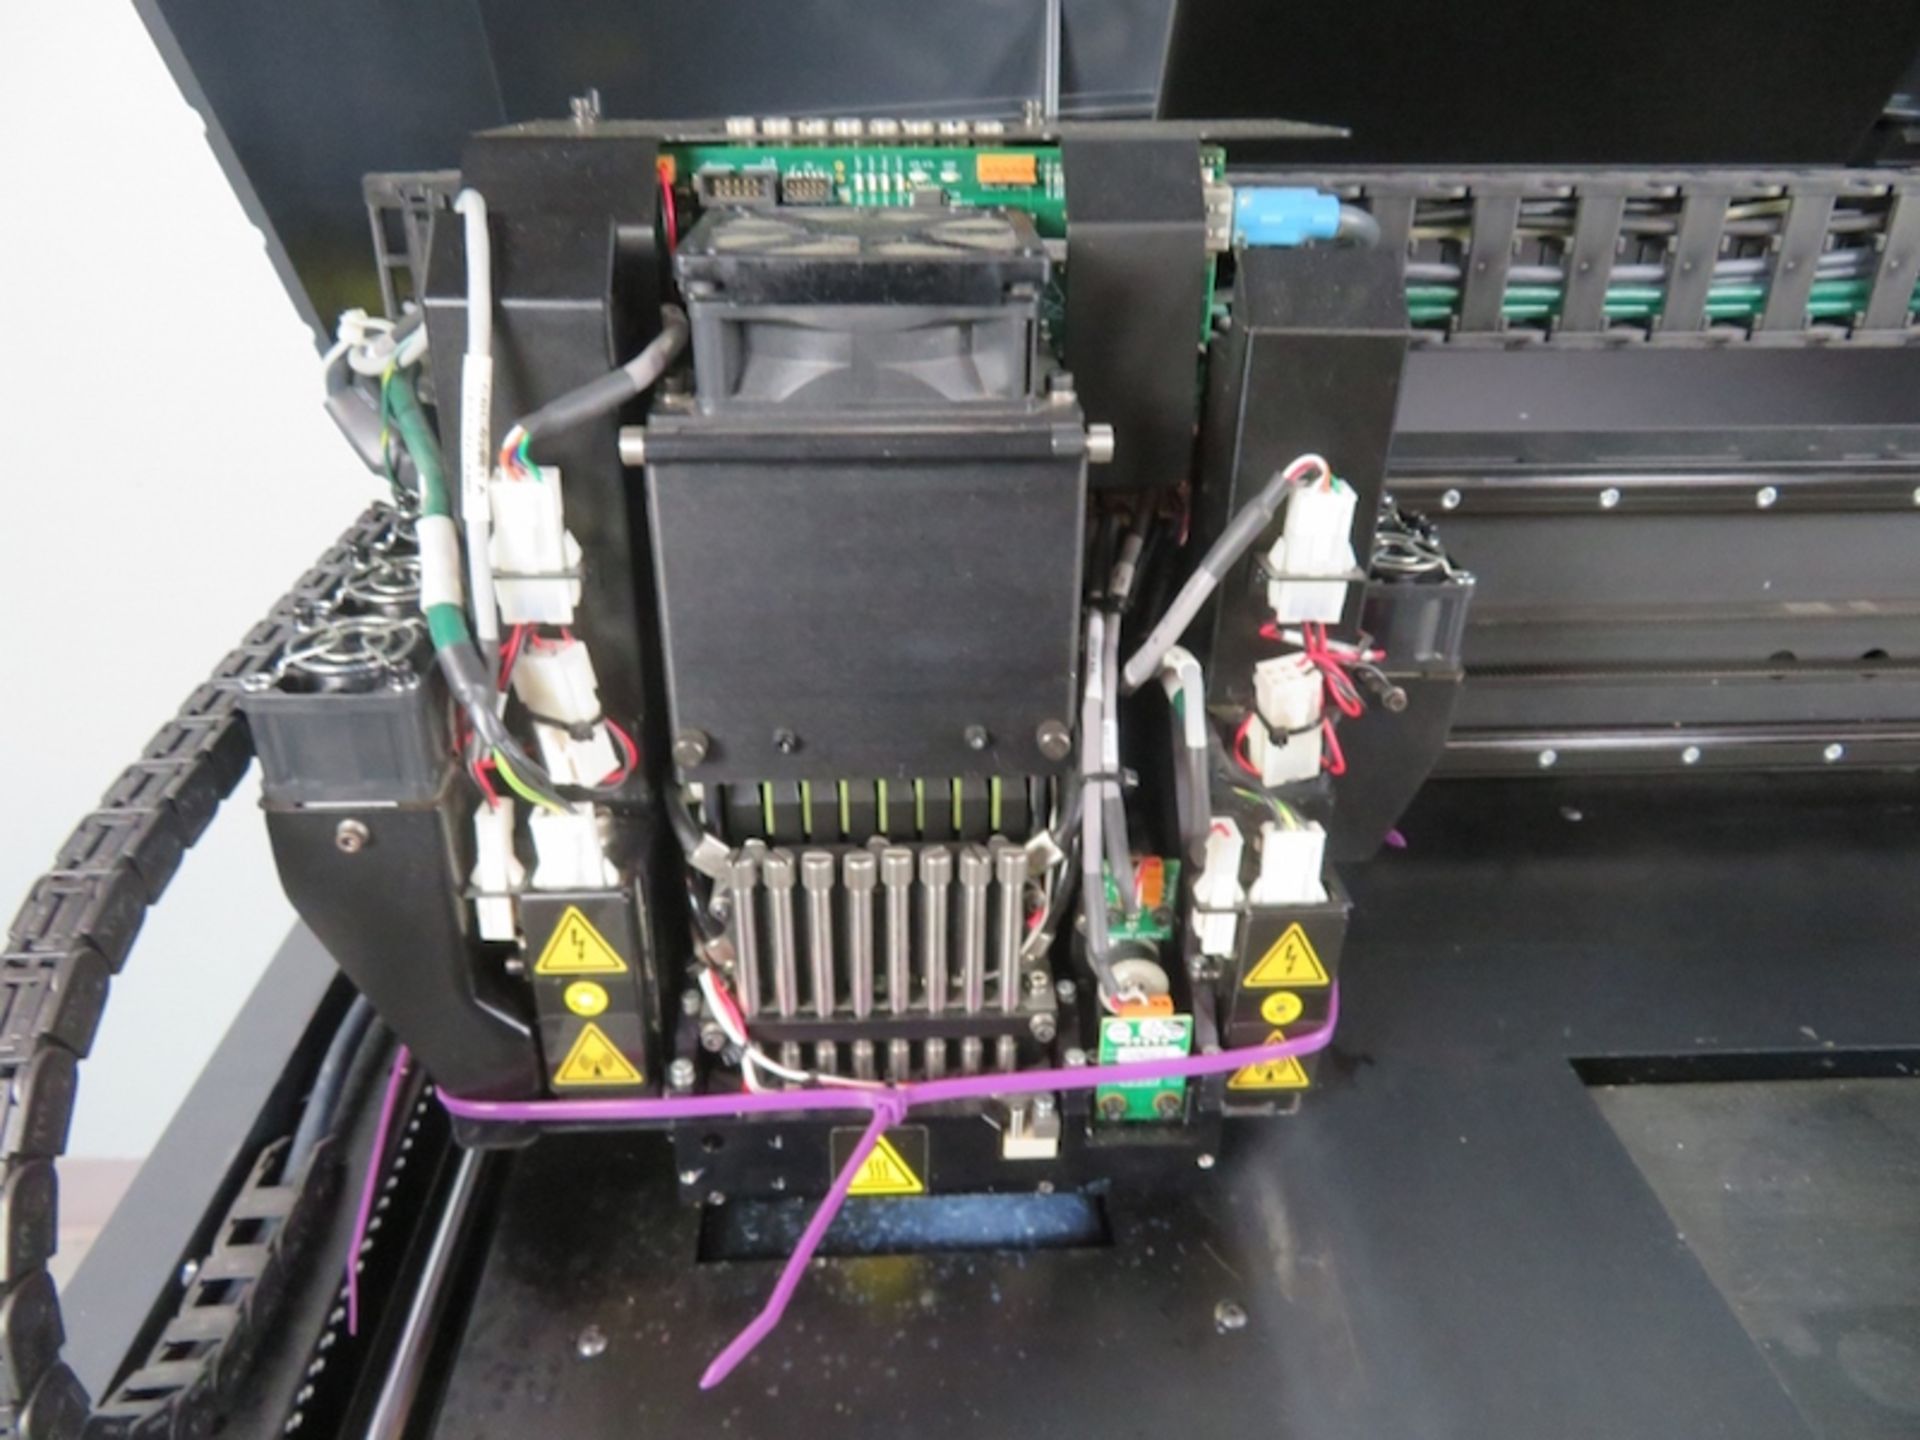 Stratsys Eden 350V 3D Printer, New in 2014 - Image 10 of 26